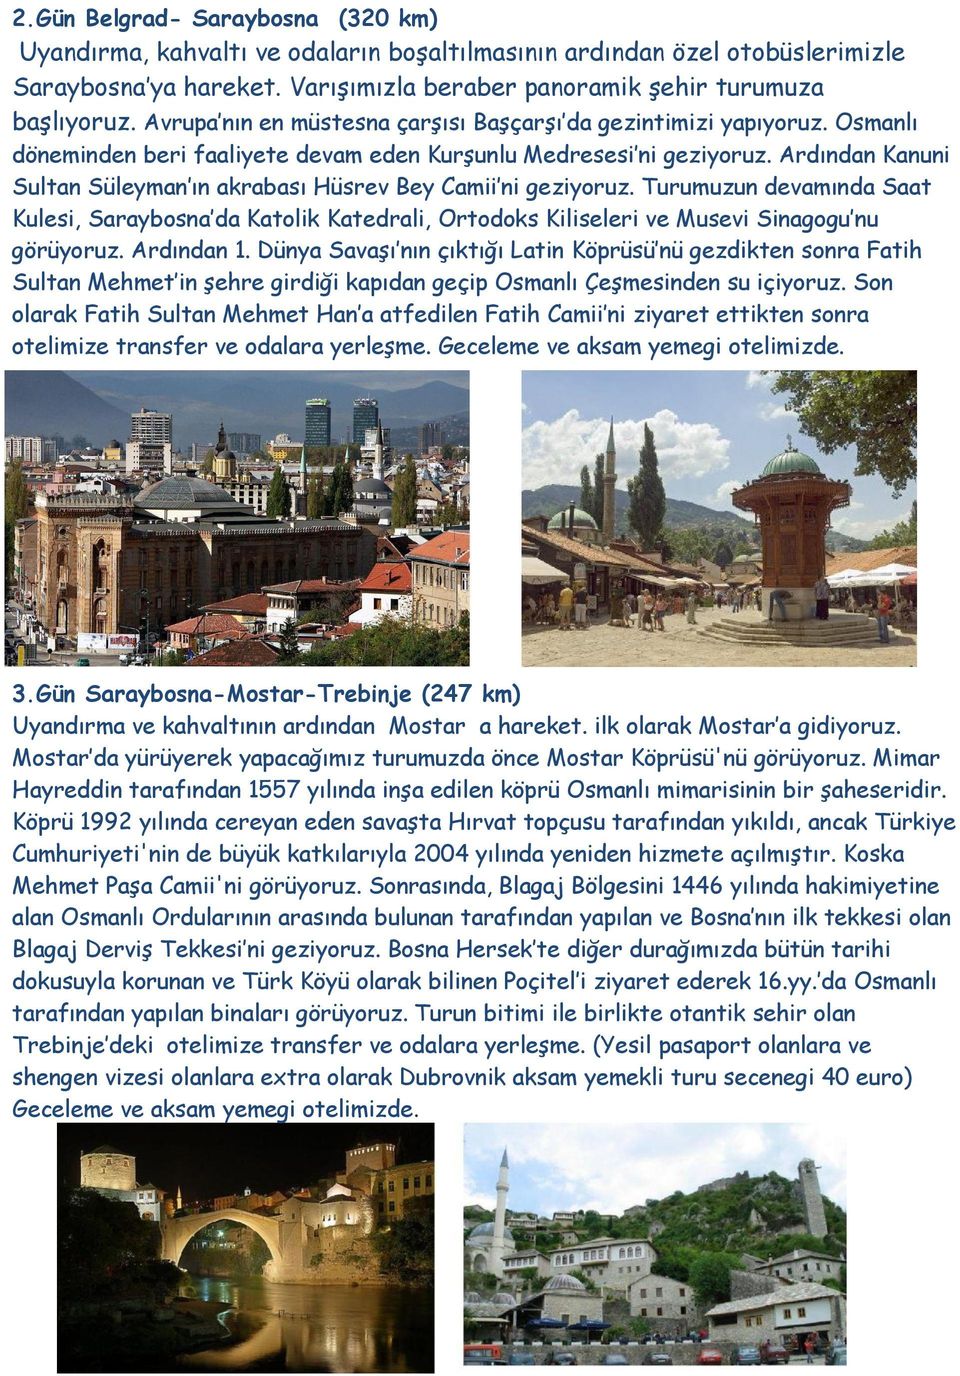 Ardından Kanuni Sultan Süleyman ın akrabası Hüsrev Bey Camii ni geziyoruz. Turumuzun devamında Saat Kulesi, Saraybosna da Katolik Katedrali, Ortodoks Kiliseleri ve Musevi Sinagogu nu görüyoruz.